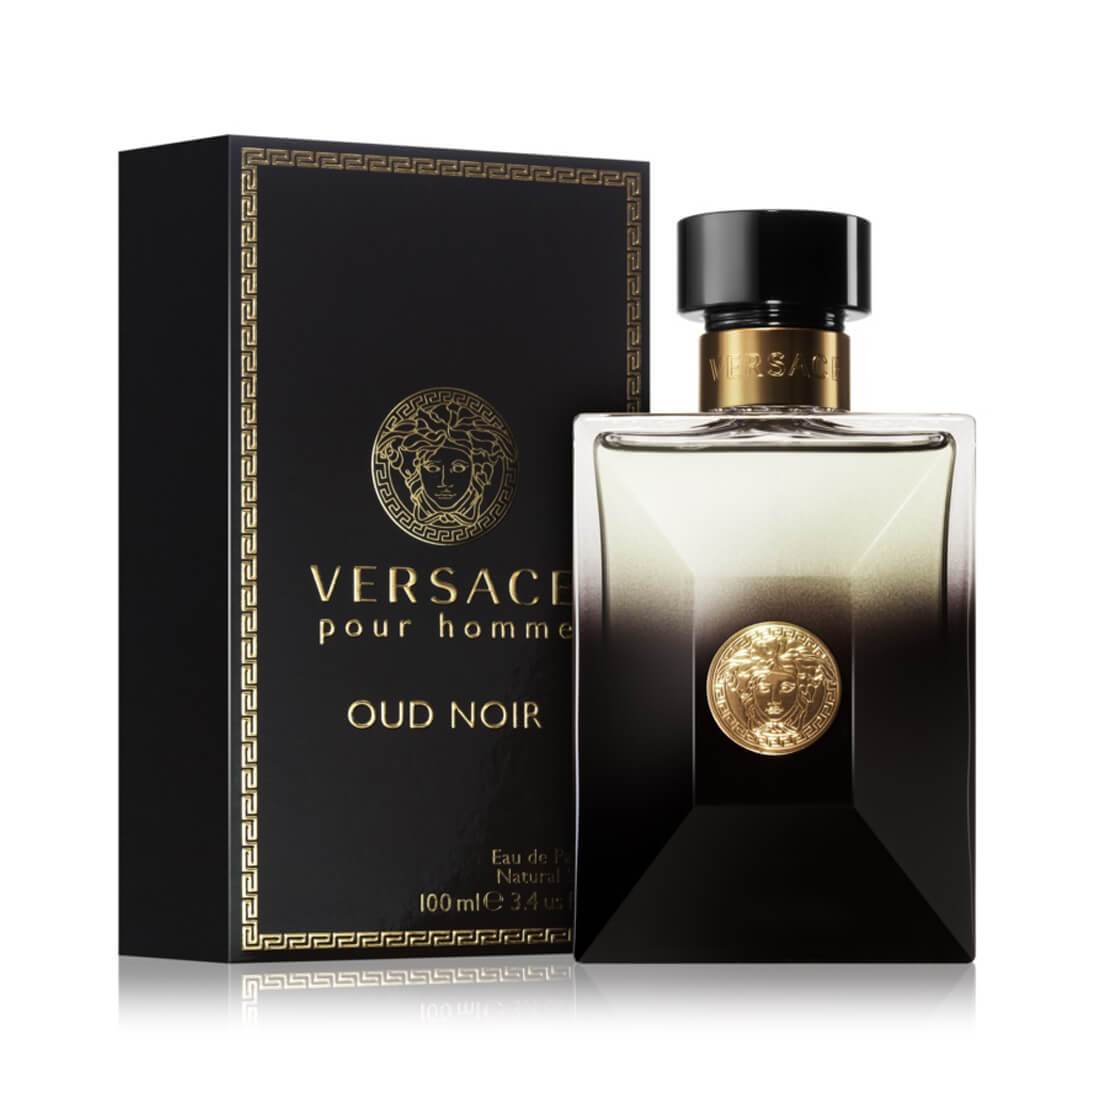 VERSACE Pour Homme Oud Noir Eau de Parfum